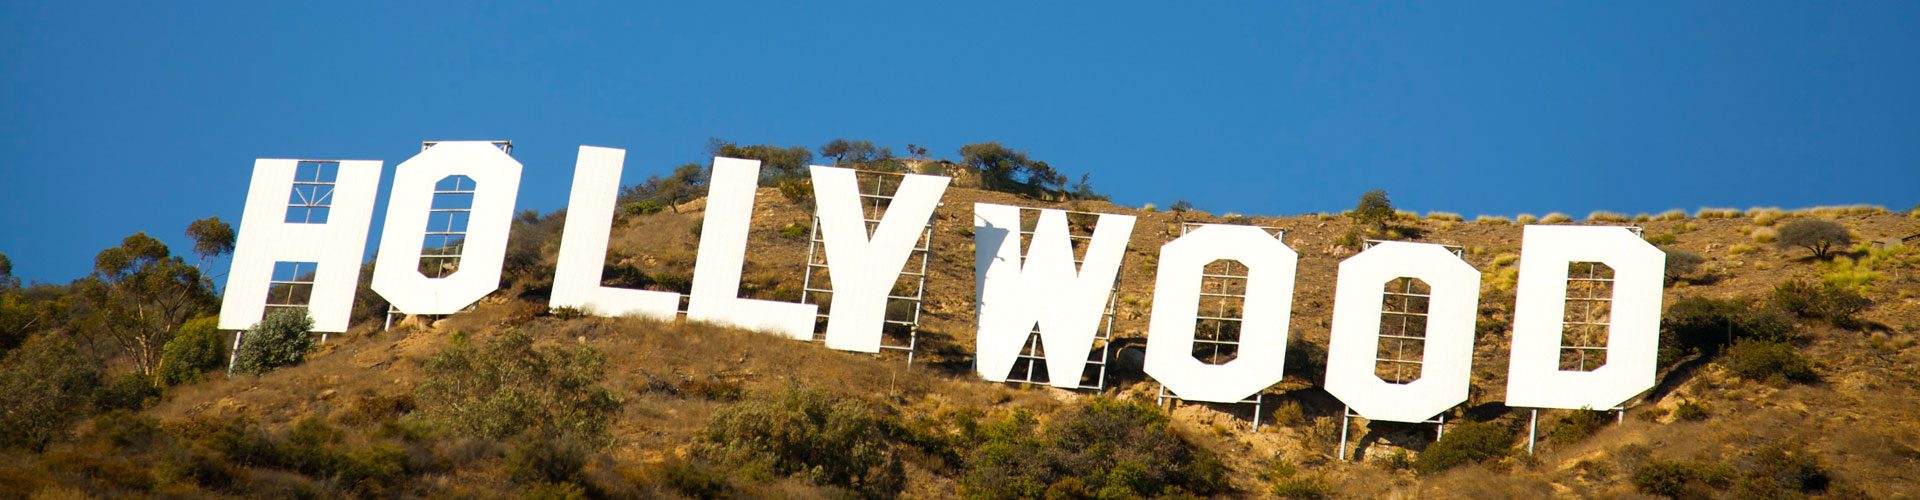 Hollywood Zeichen, Los Angeles, Kalifornien